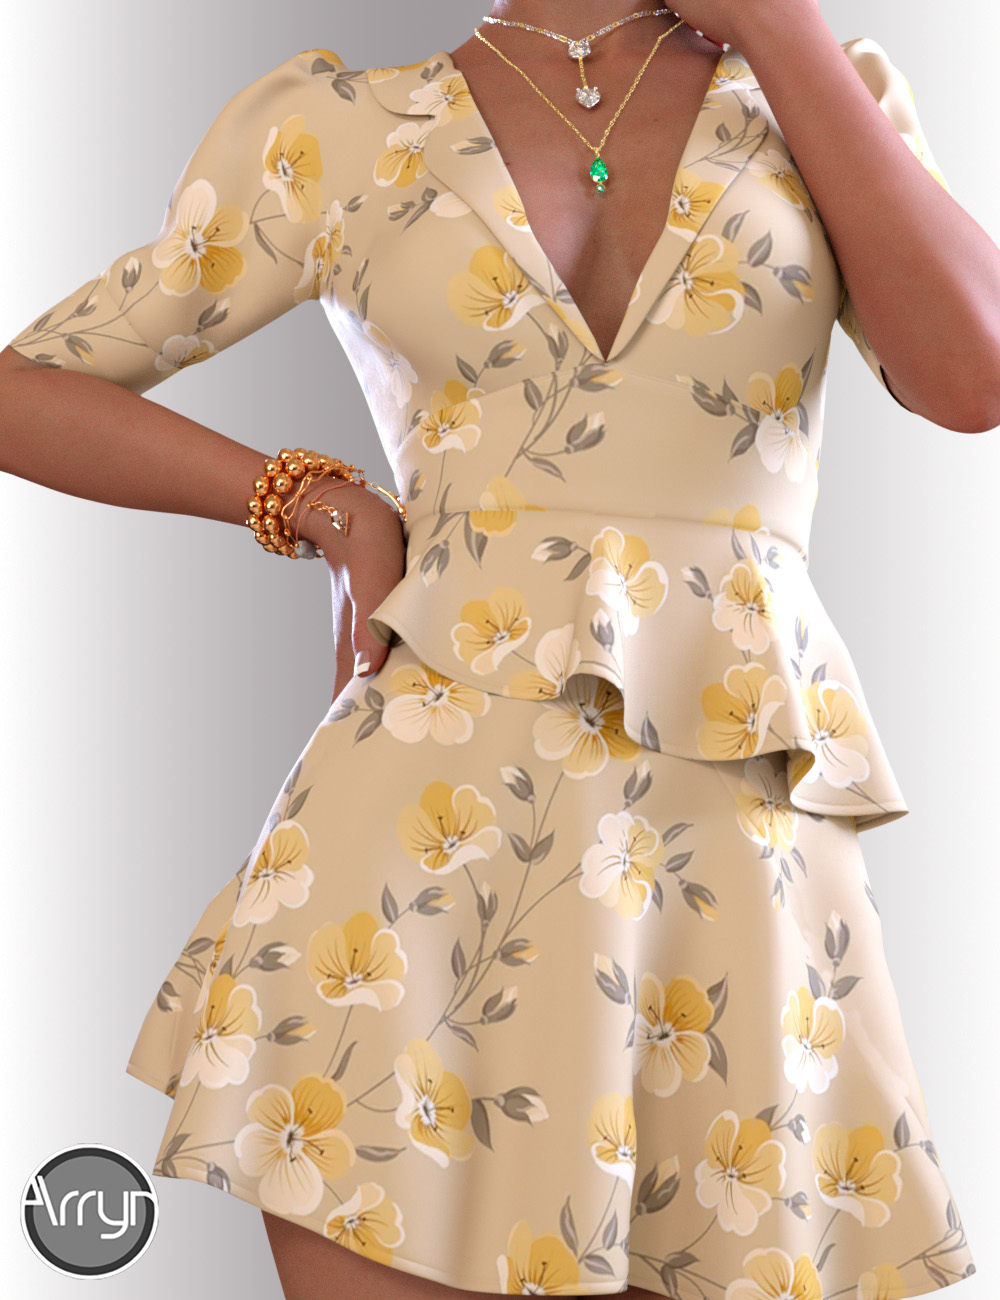 dForce Hailee Dress for Genesis 8 Female(s) by: OnnelArryn, 3D Models by Daz 3D